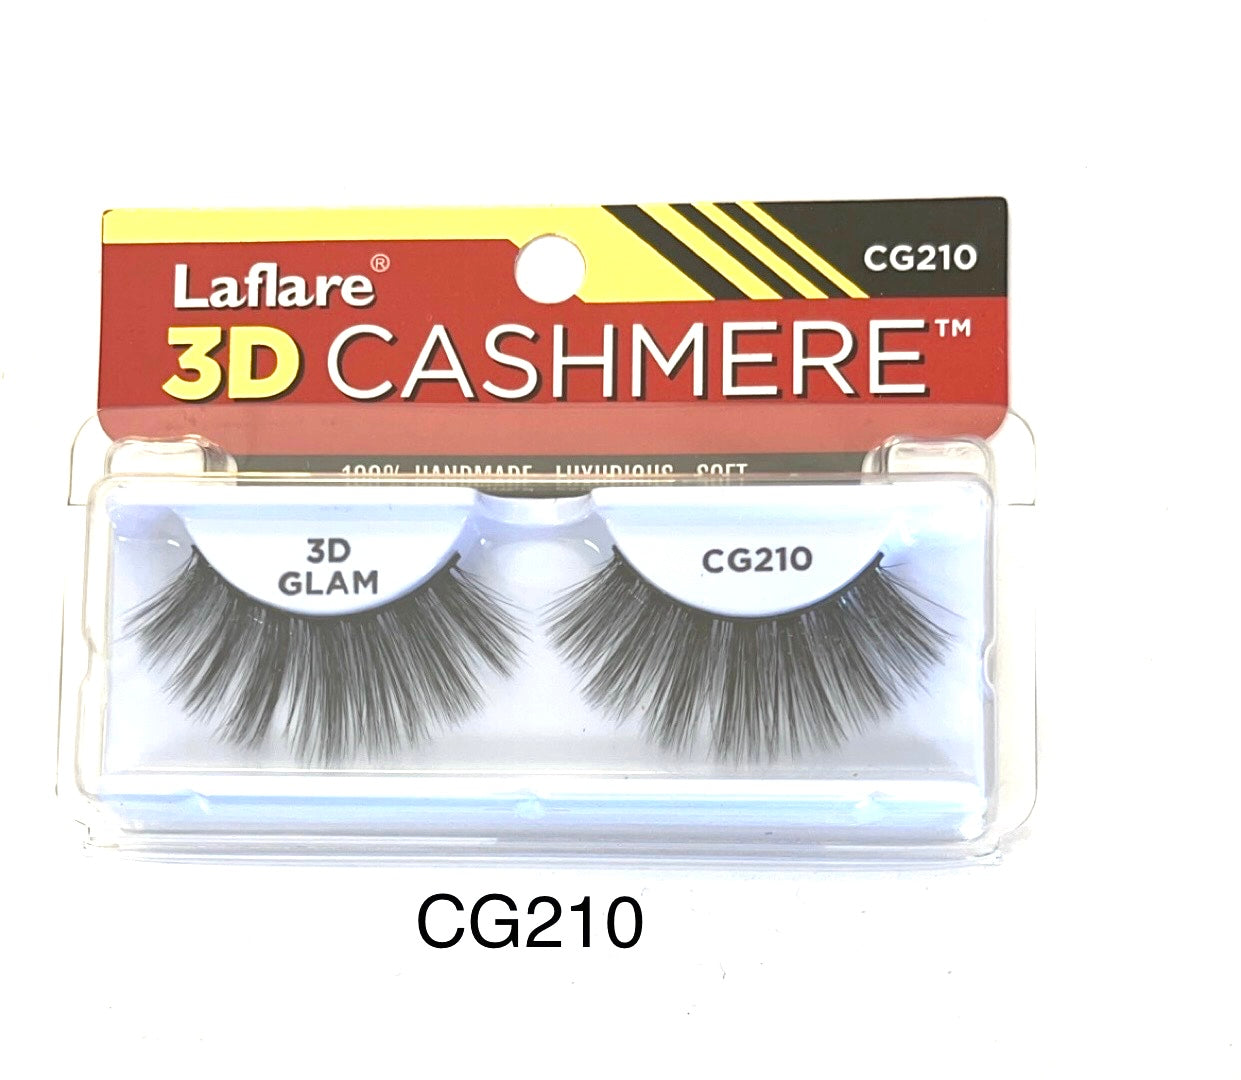 Laflare 3D Cashmere CG210